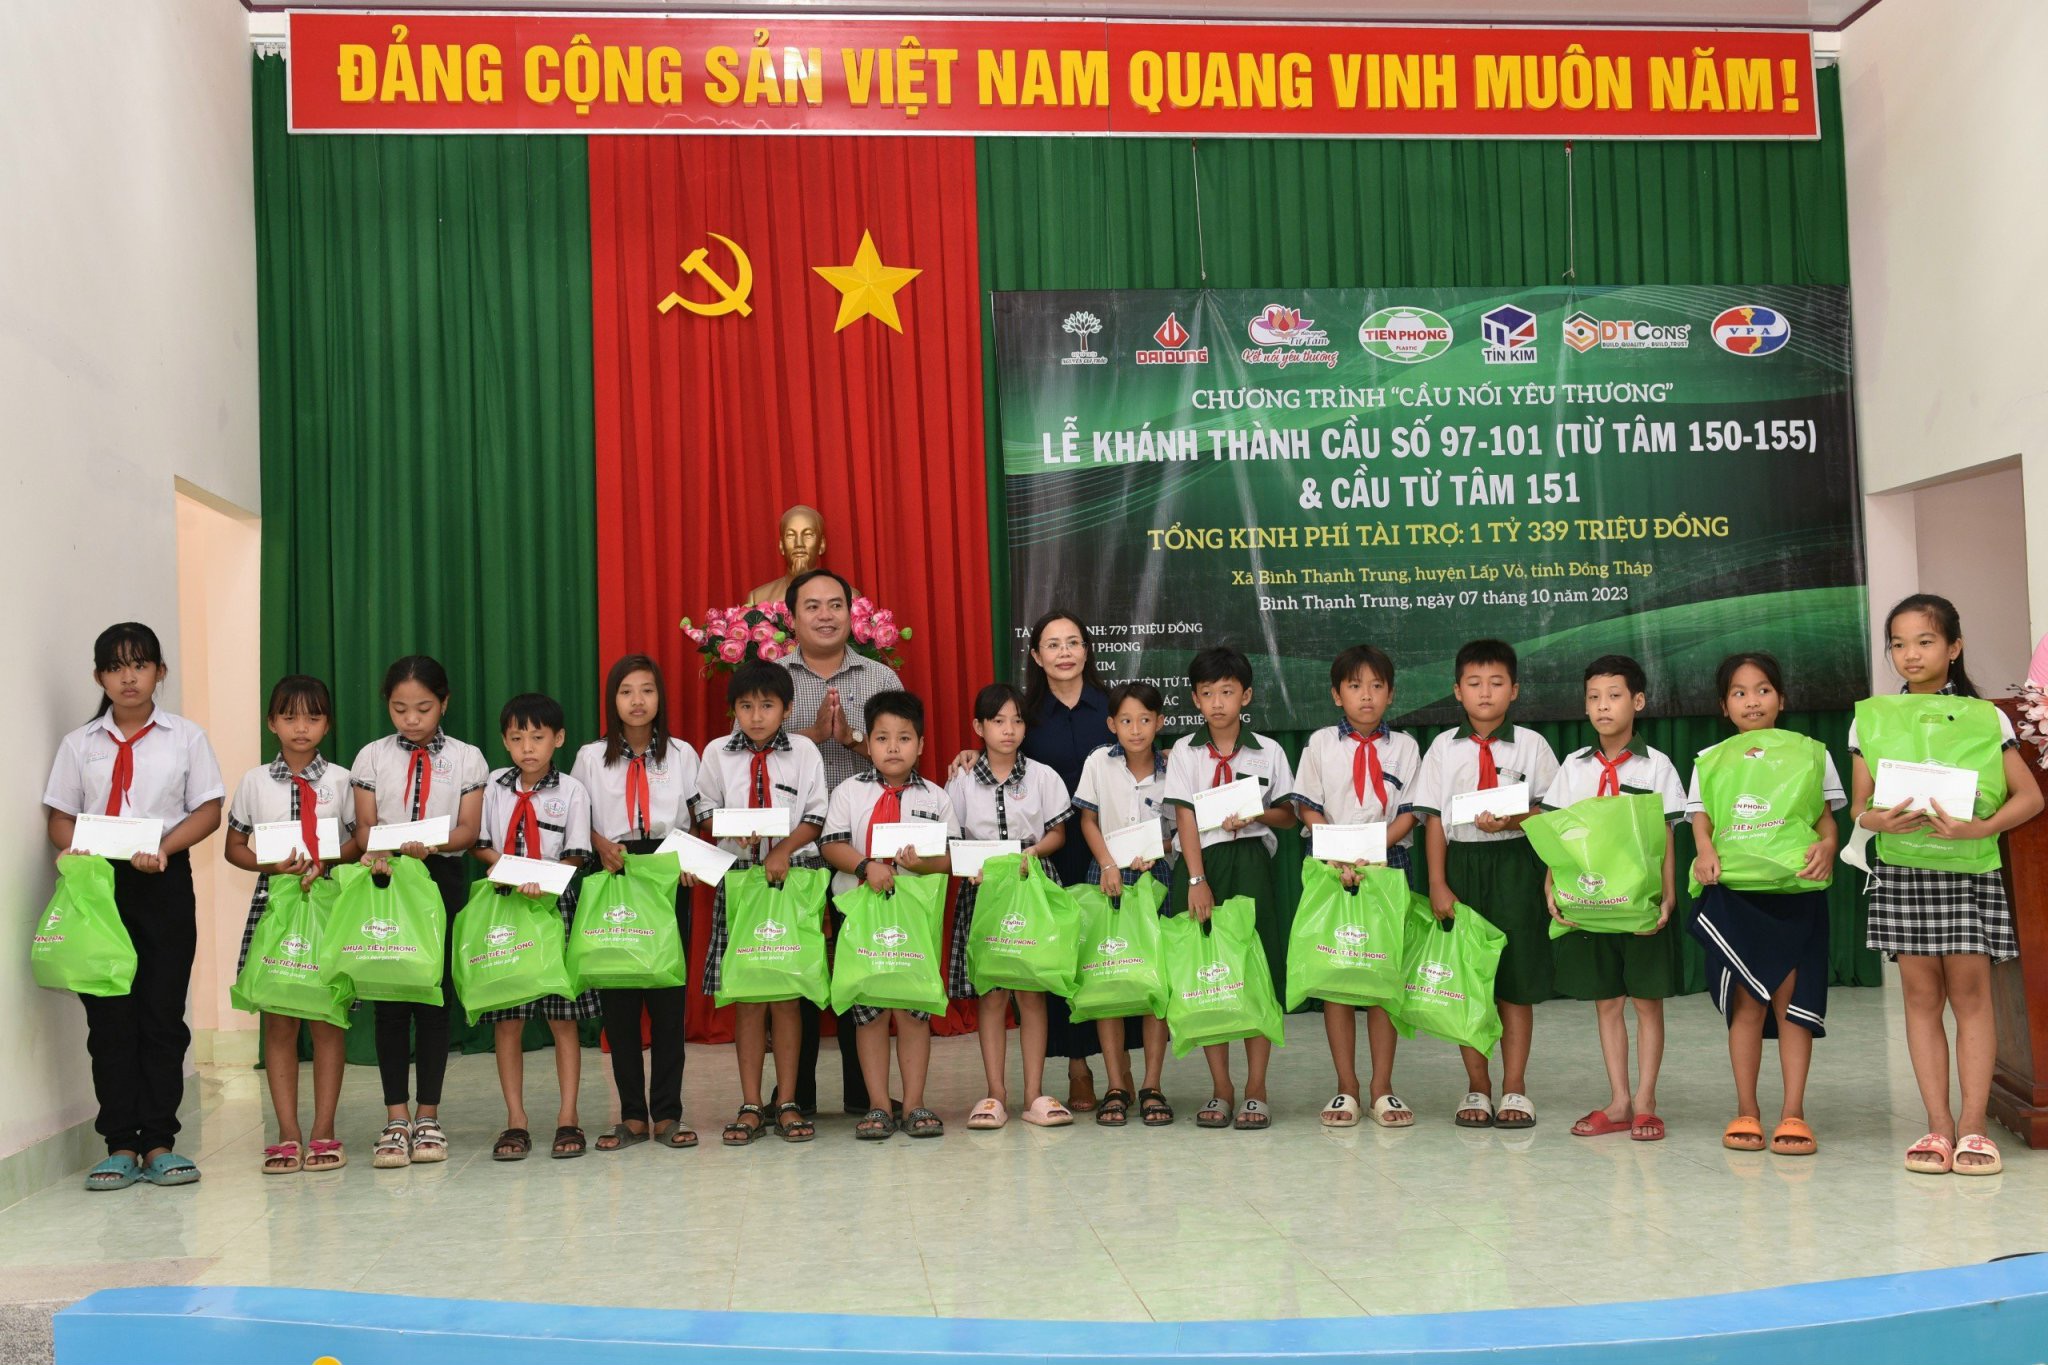 Chương trình Cầu nối yêu thương đã trao tặng 30 phần quà học bổng cho các em học sinh giỏi vượt khó của 03 ấp tại xã Bình Thạnh Trung, huyện Lấp Vò, tỉnh Đồng Tháp.